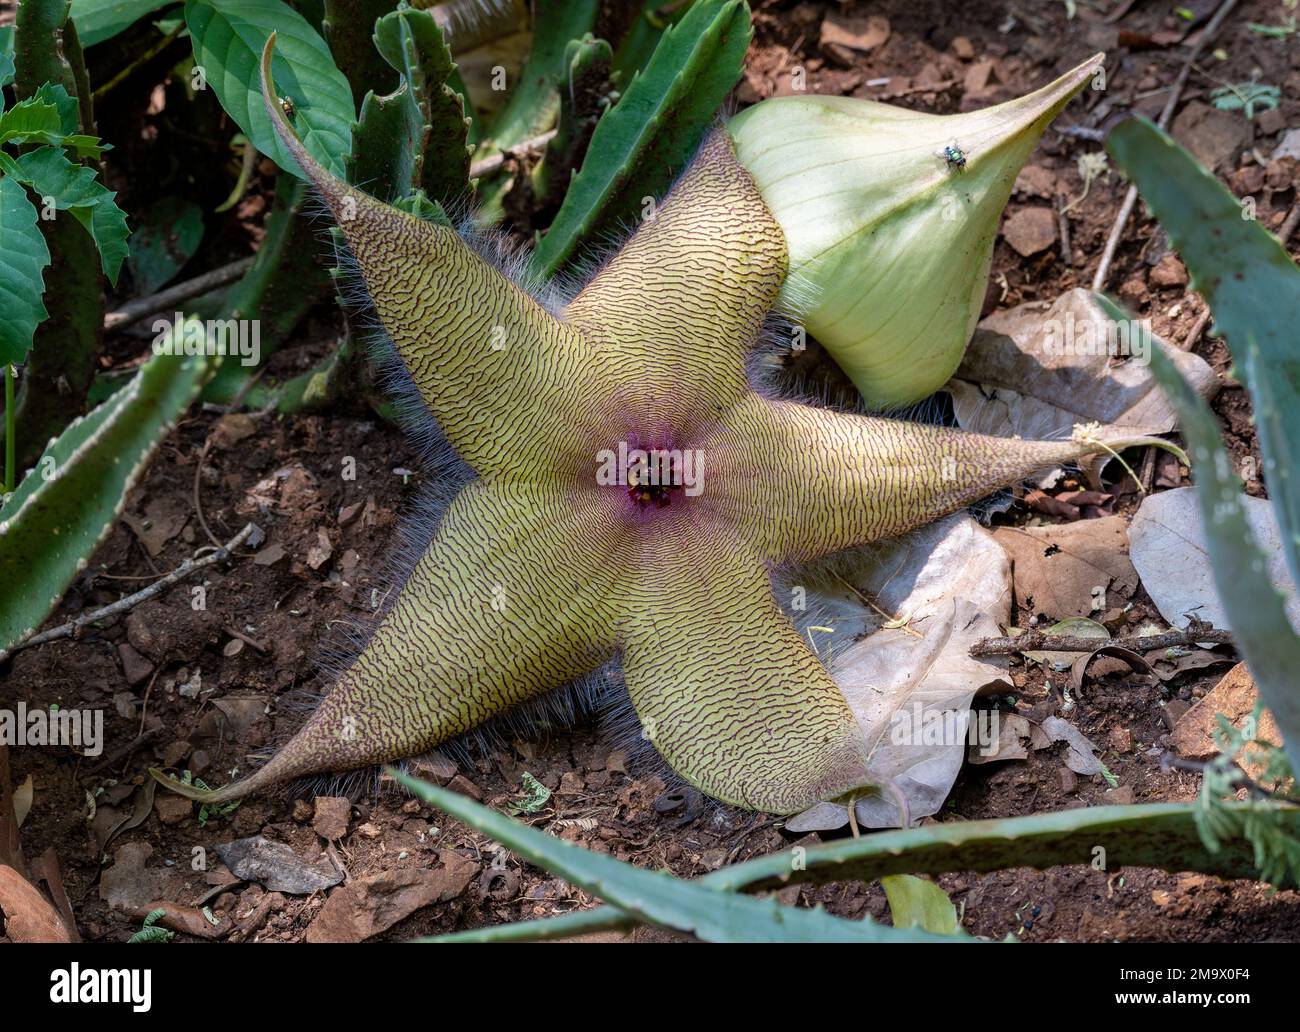 Fleur d'un Cactus de Starfish (Stapelia gigantea), originaire d'Afrique du Sud. Parc national Kruger, Afrique du Sud. Banque D'Images